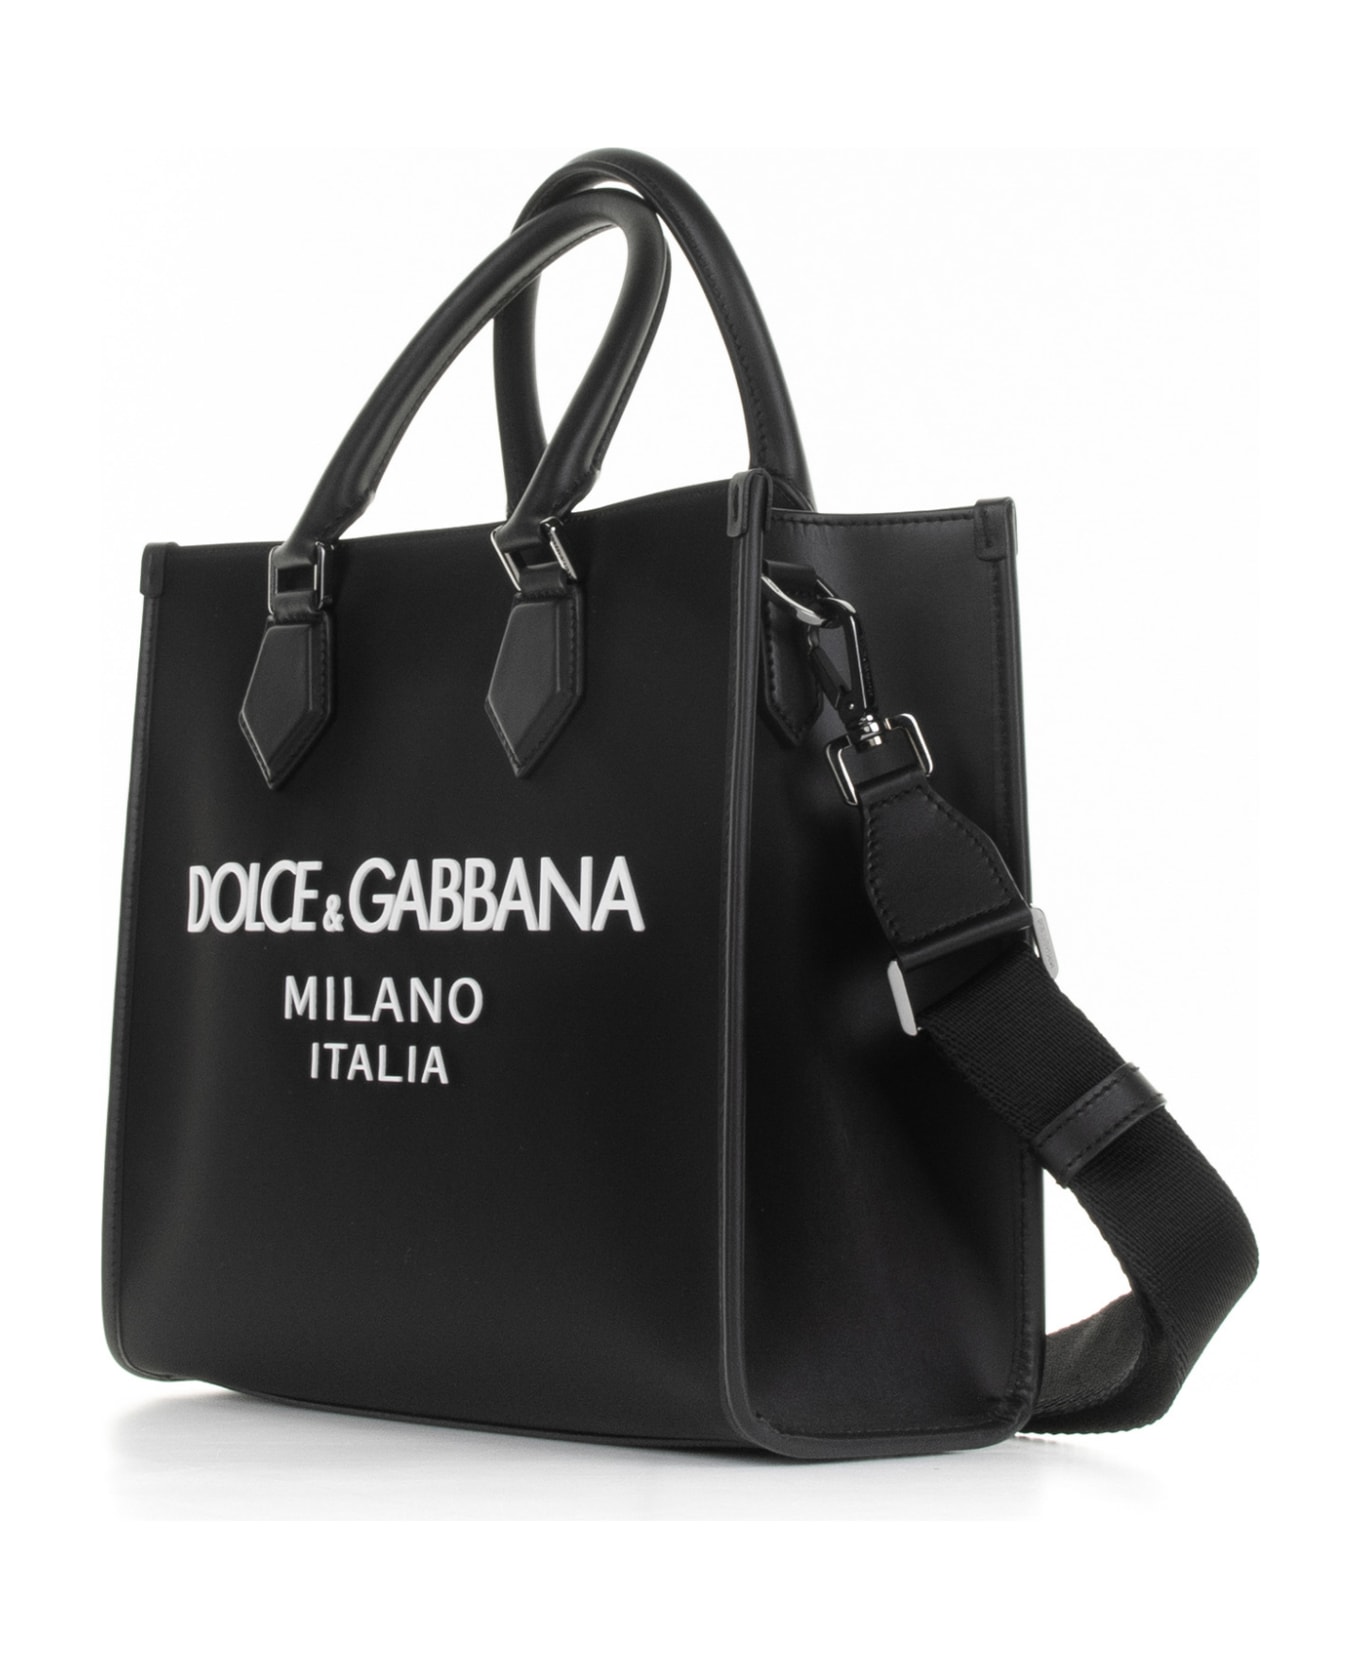 Dolce & Gabbana Large Shopping Bag With Rubberized Logo - NERO